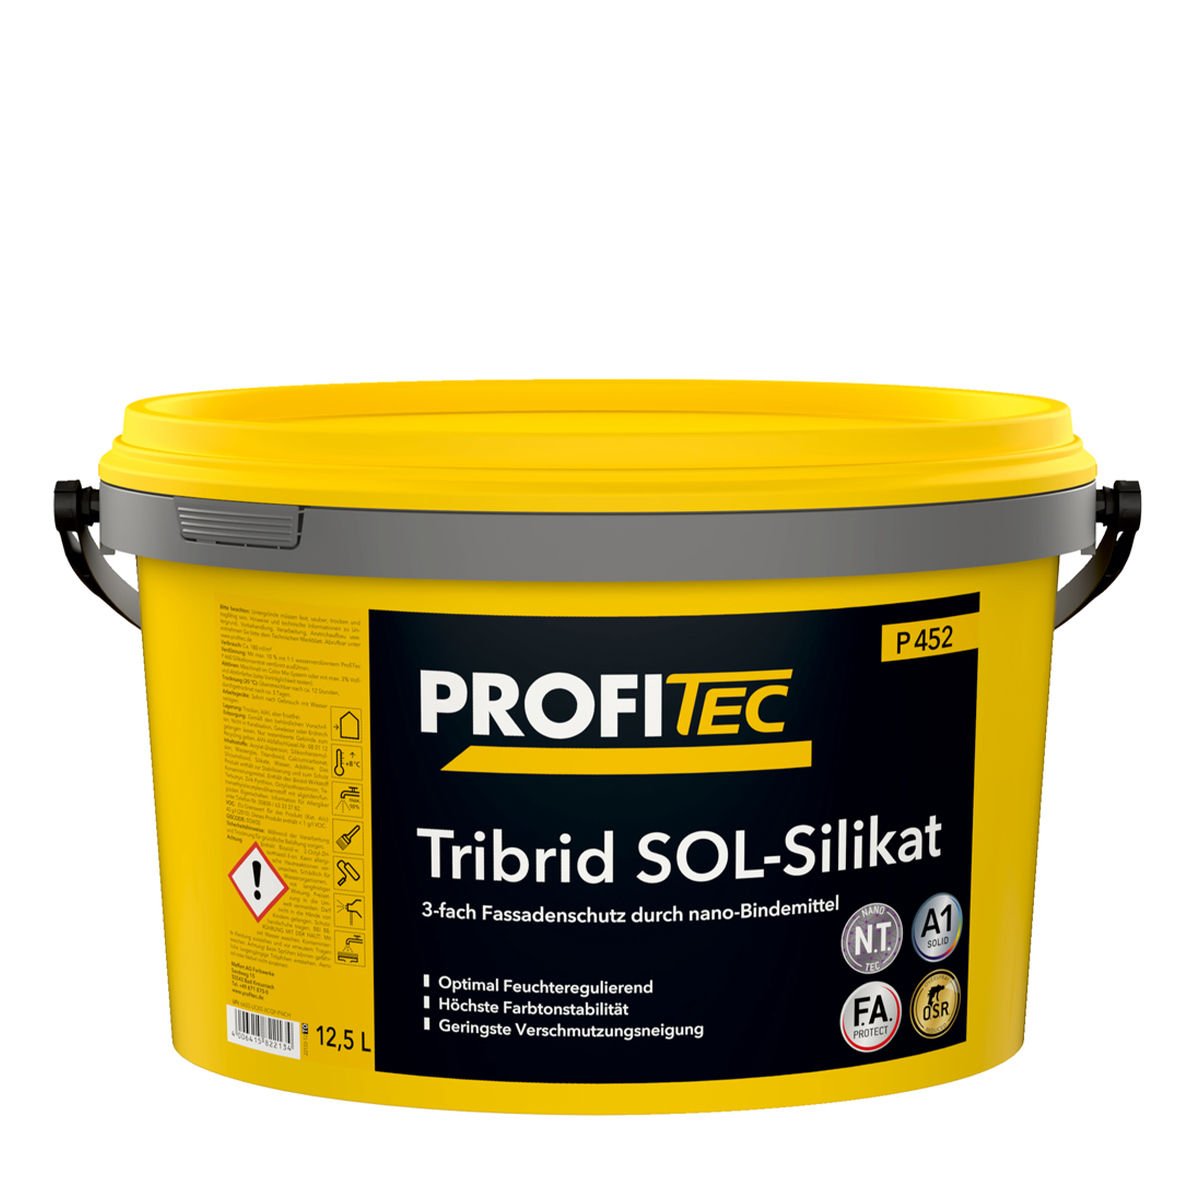 ProfiTec P452 Tribrid SOL-Silikat 12,5L weiß, feuchtigkeitsregulierend, hoch farbtonbeständig